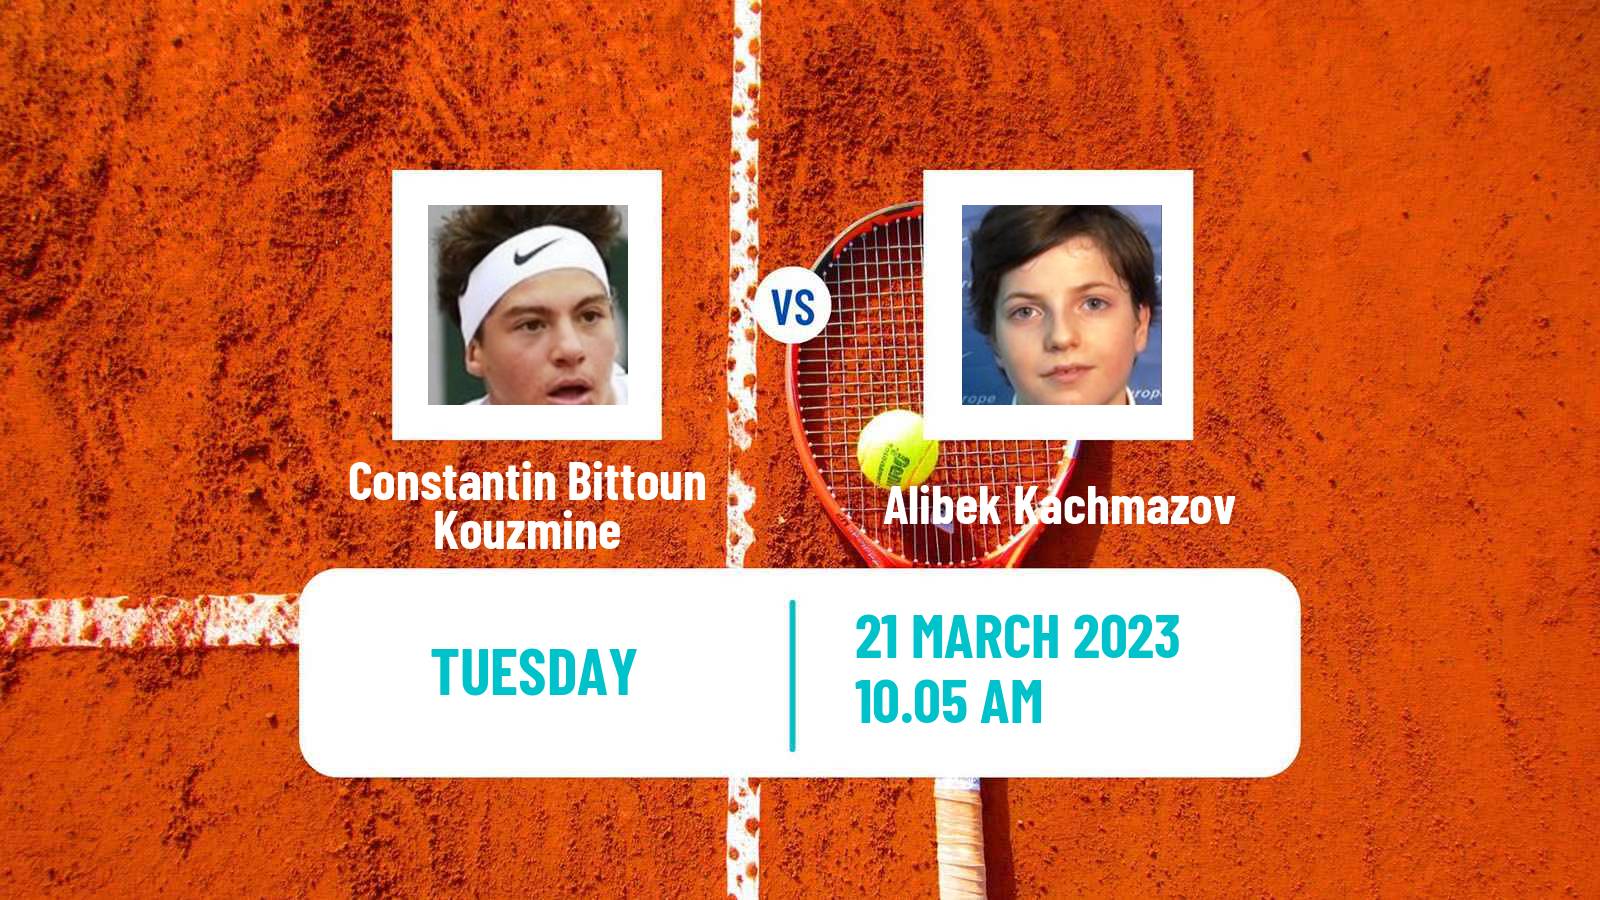 Tennis ATP Challenger Constantin Bittoun Kouzmine - Alibek Kachmazov